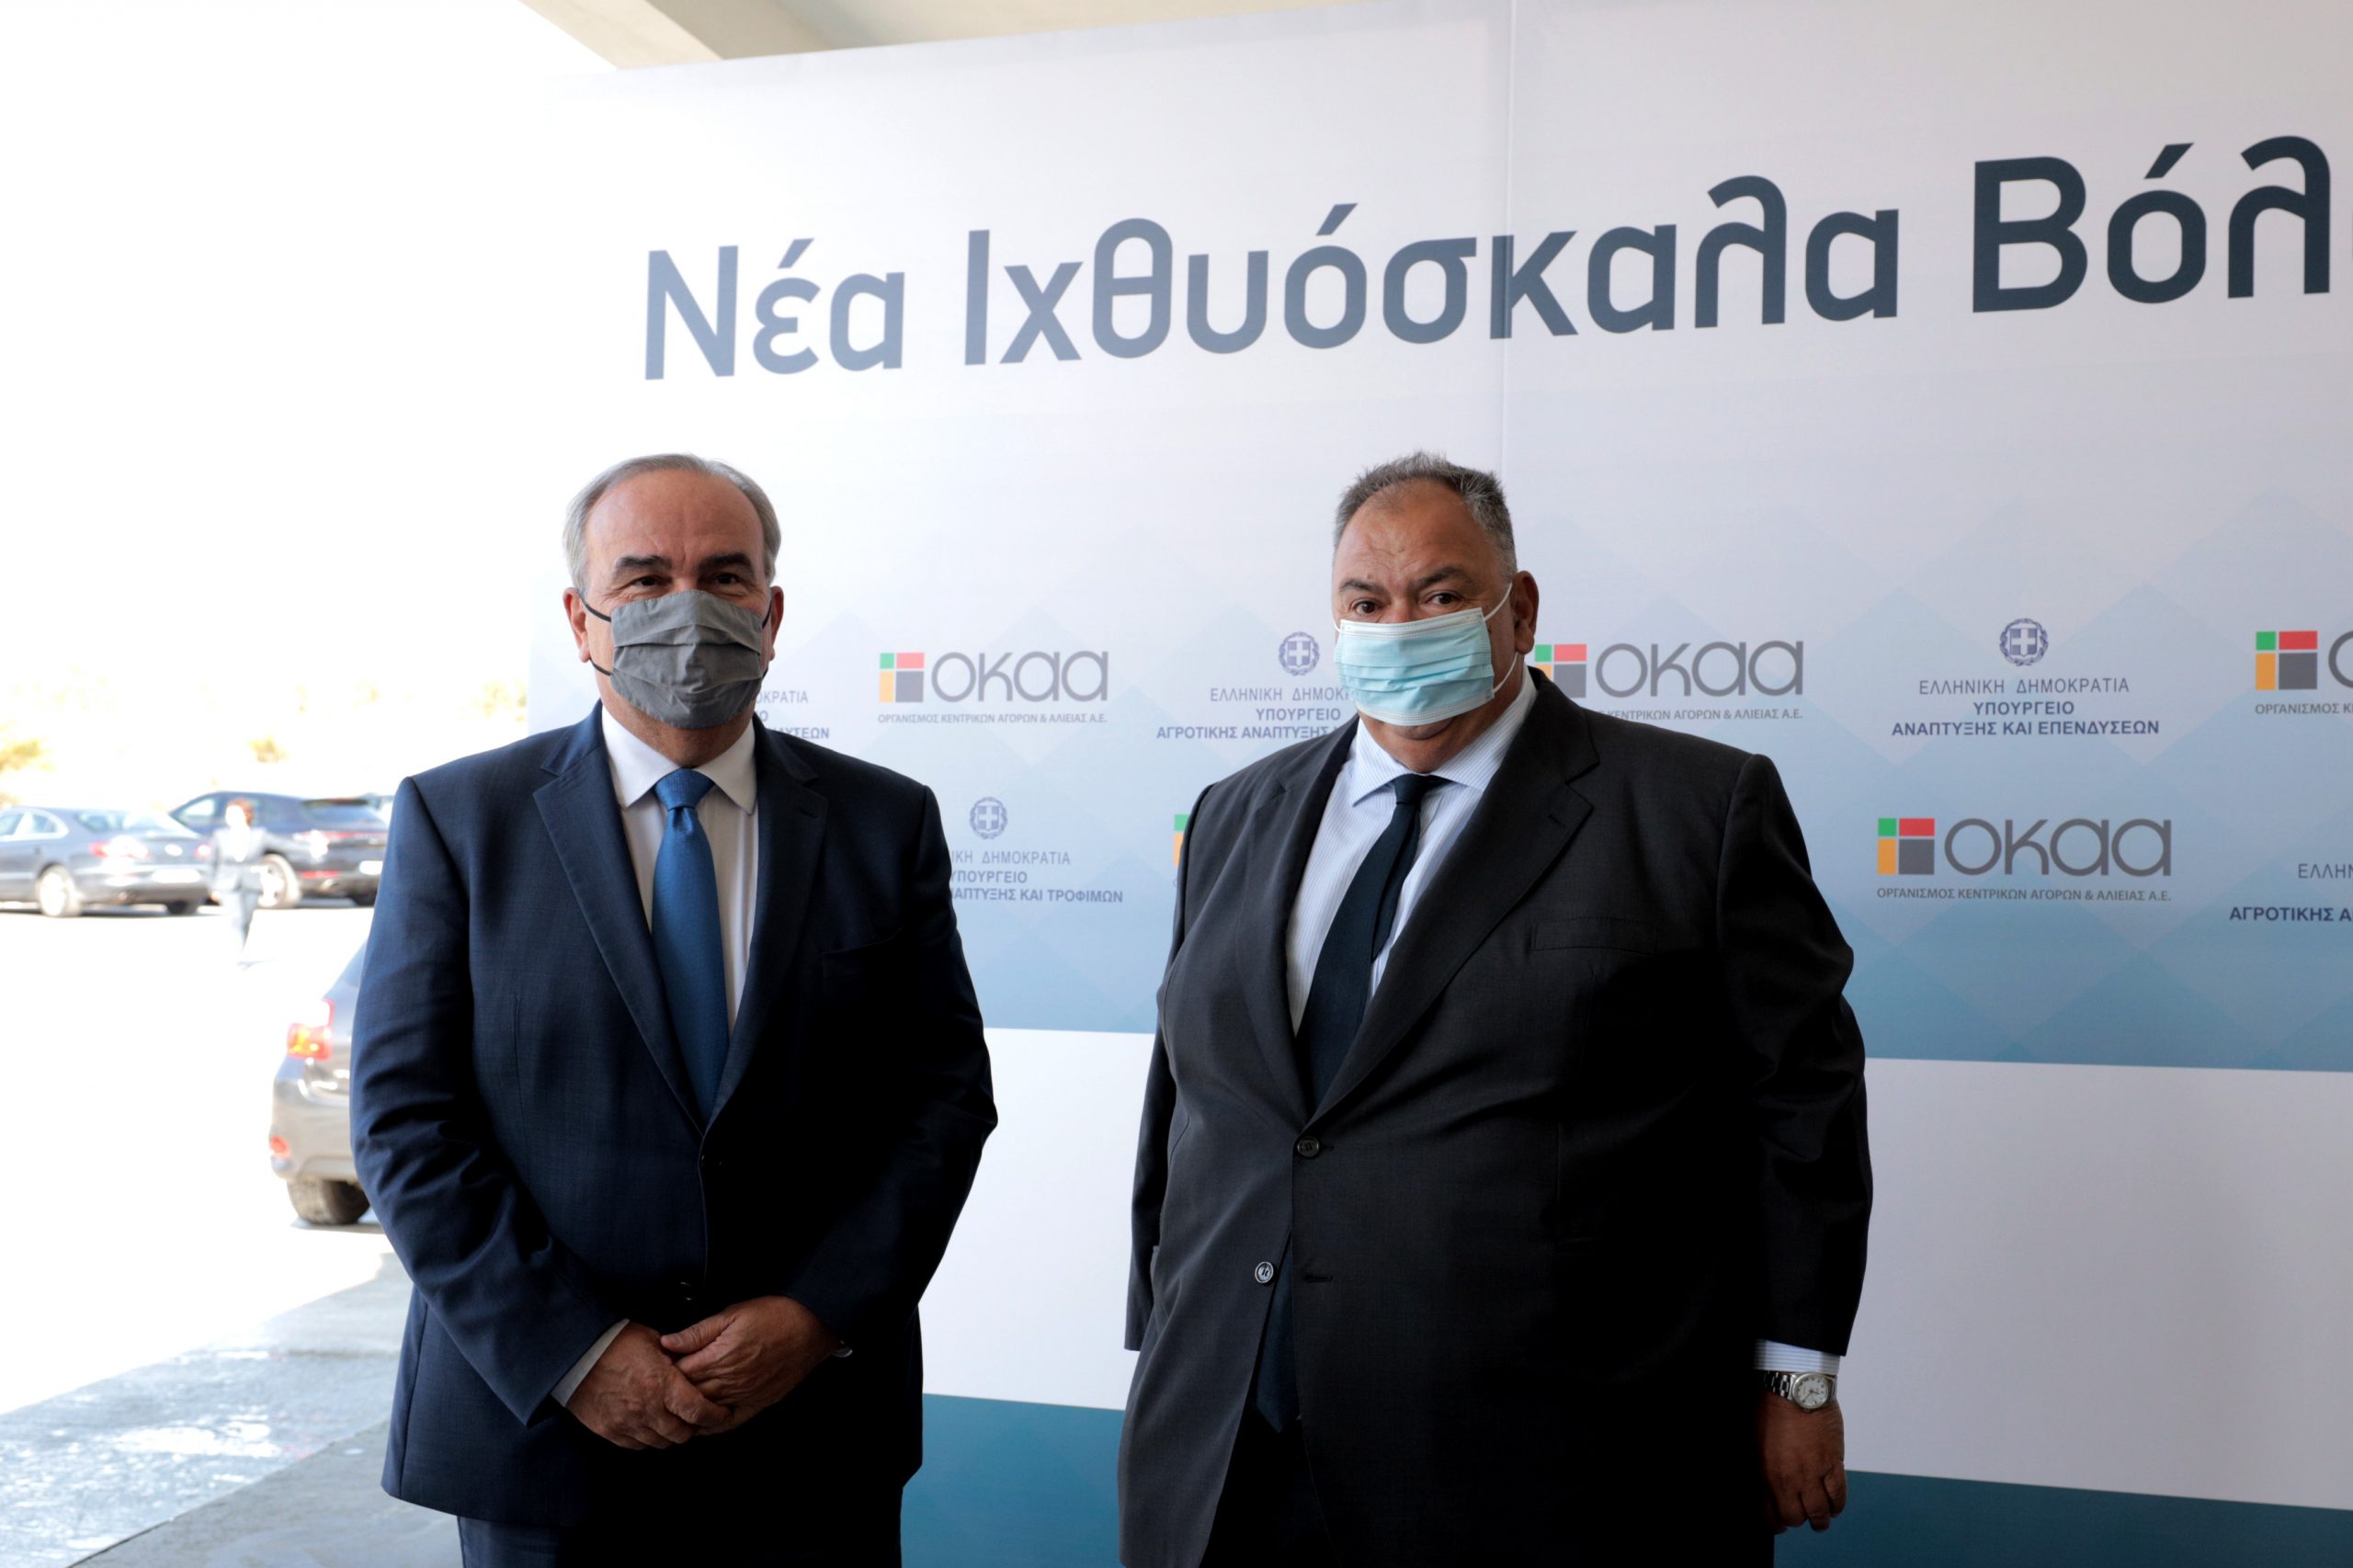 Ο Νίκος Παπαθανάσης, Αναπληρωτής Υπουργός Ανάπτυξης και Επενδύσεων, εγκαινίασε την Ιχθυόσκαλα Βόλου